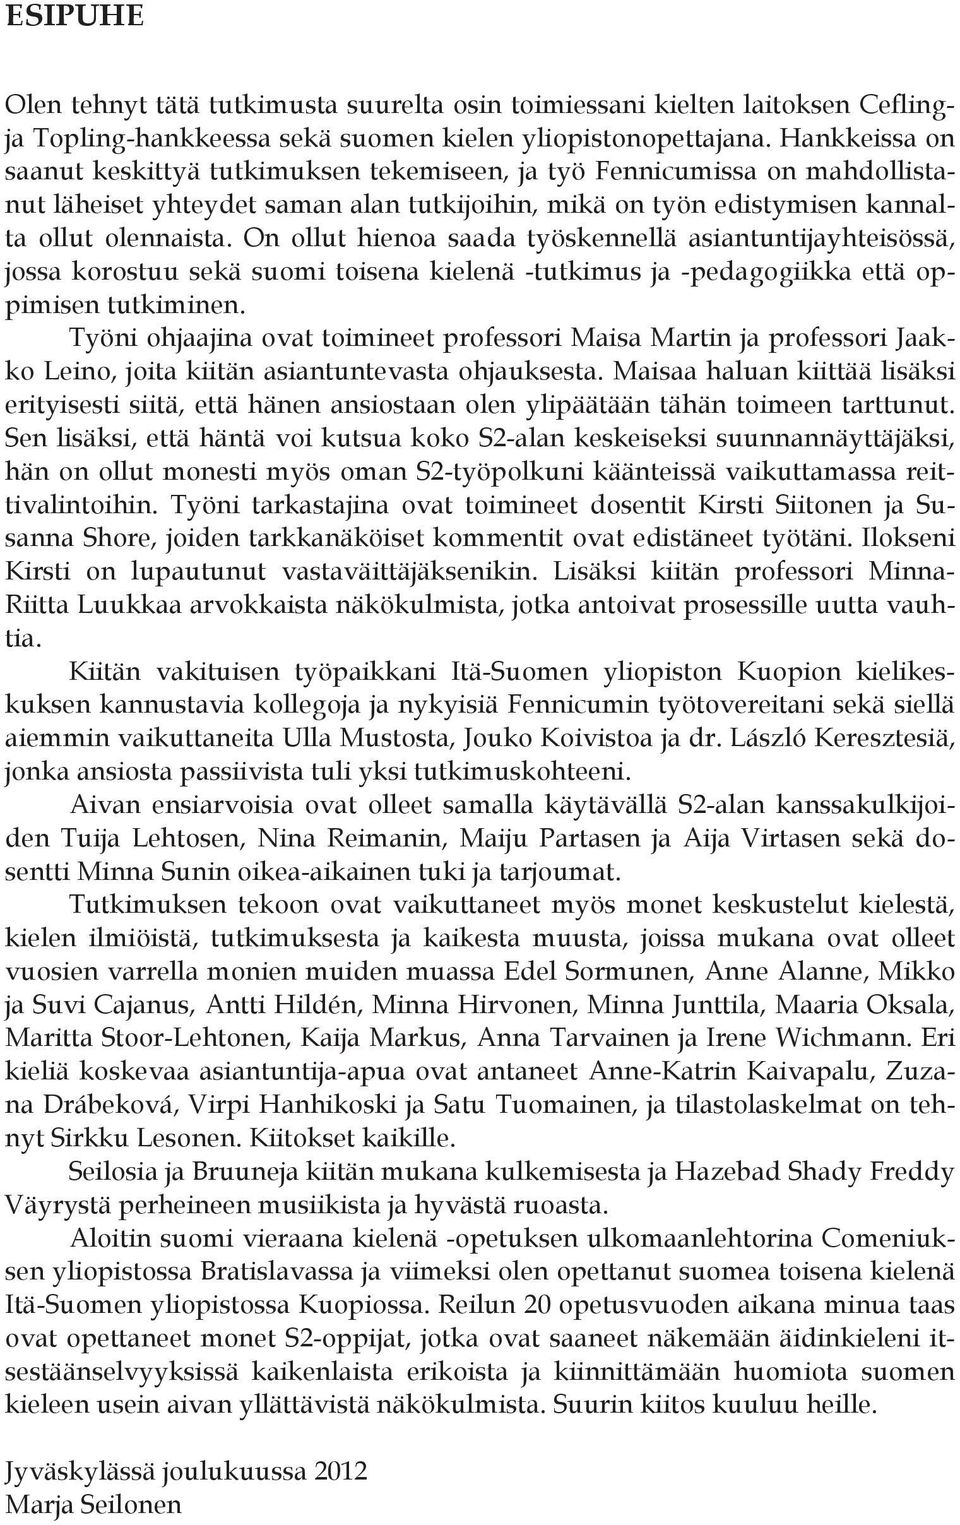 On ollut hienoa saada työskennellä asiantuntijayhteisössä, jossa korostuu sekä suomi toisena kielenä -tutkimus ja -pedagogiikka että oppimisen tutkiminen.